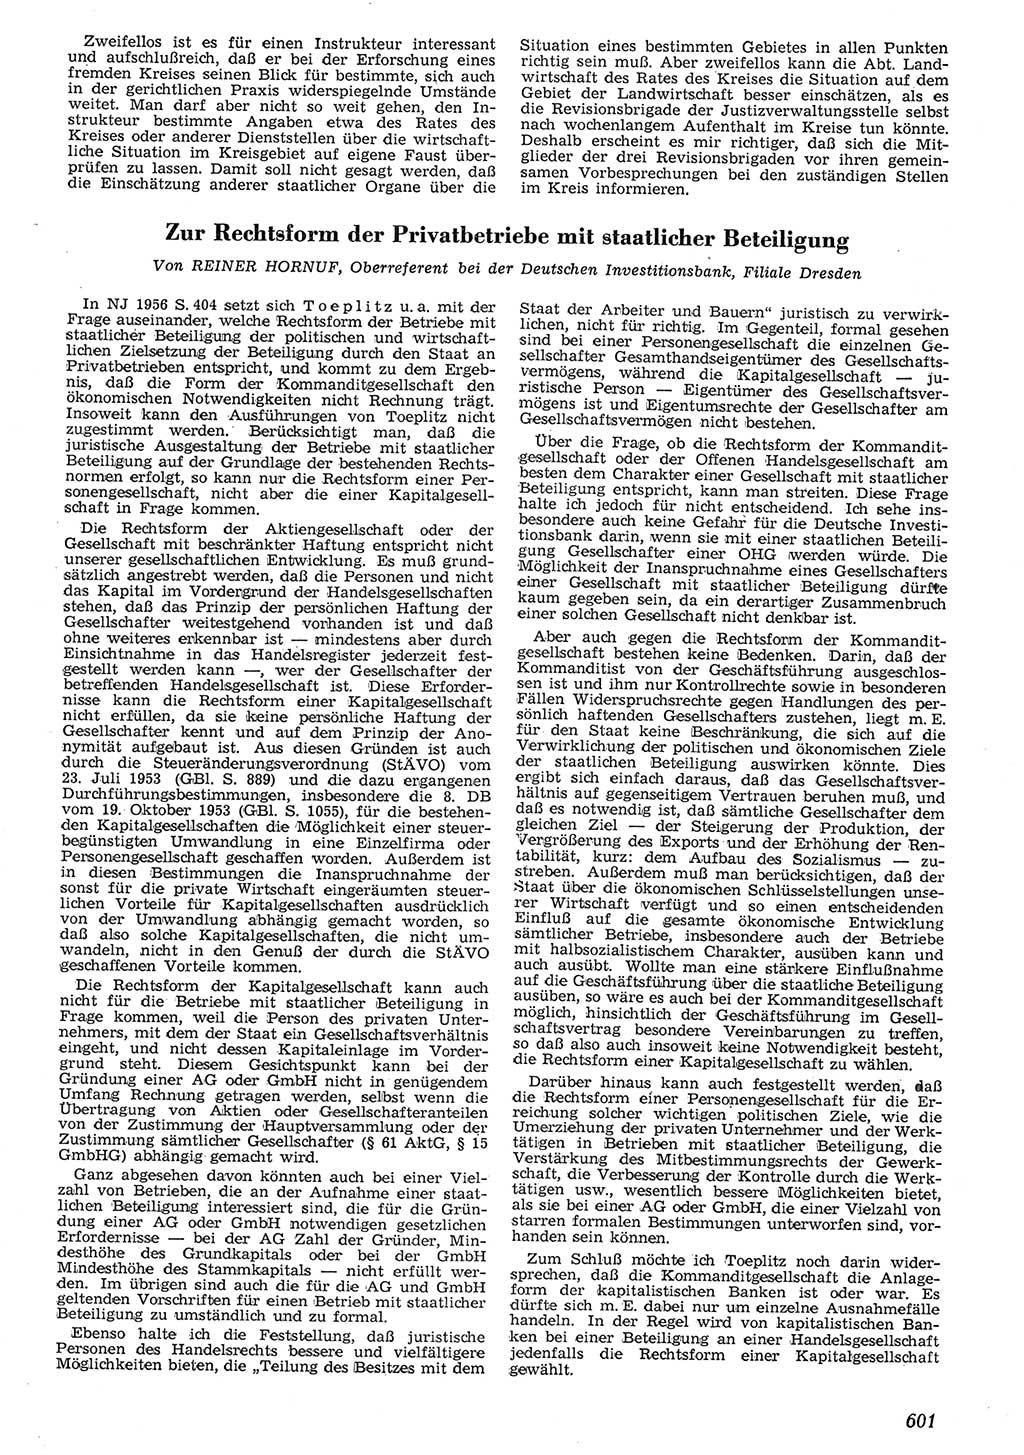 Neue Justiz (NJ), Zeitschrift für Recht und Rechtswissenschaft [Deutsche Demokratische Republik (DDR)], 10. Jahrgang 1956, Seite 601 (NJ DDR 1956, S. 601)